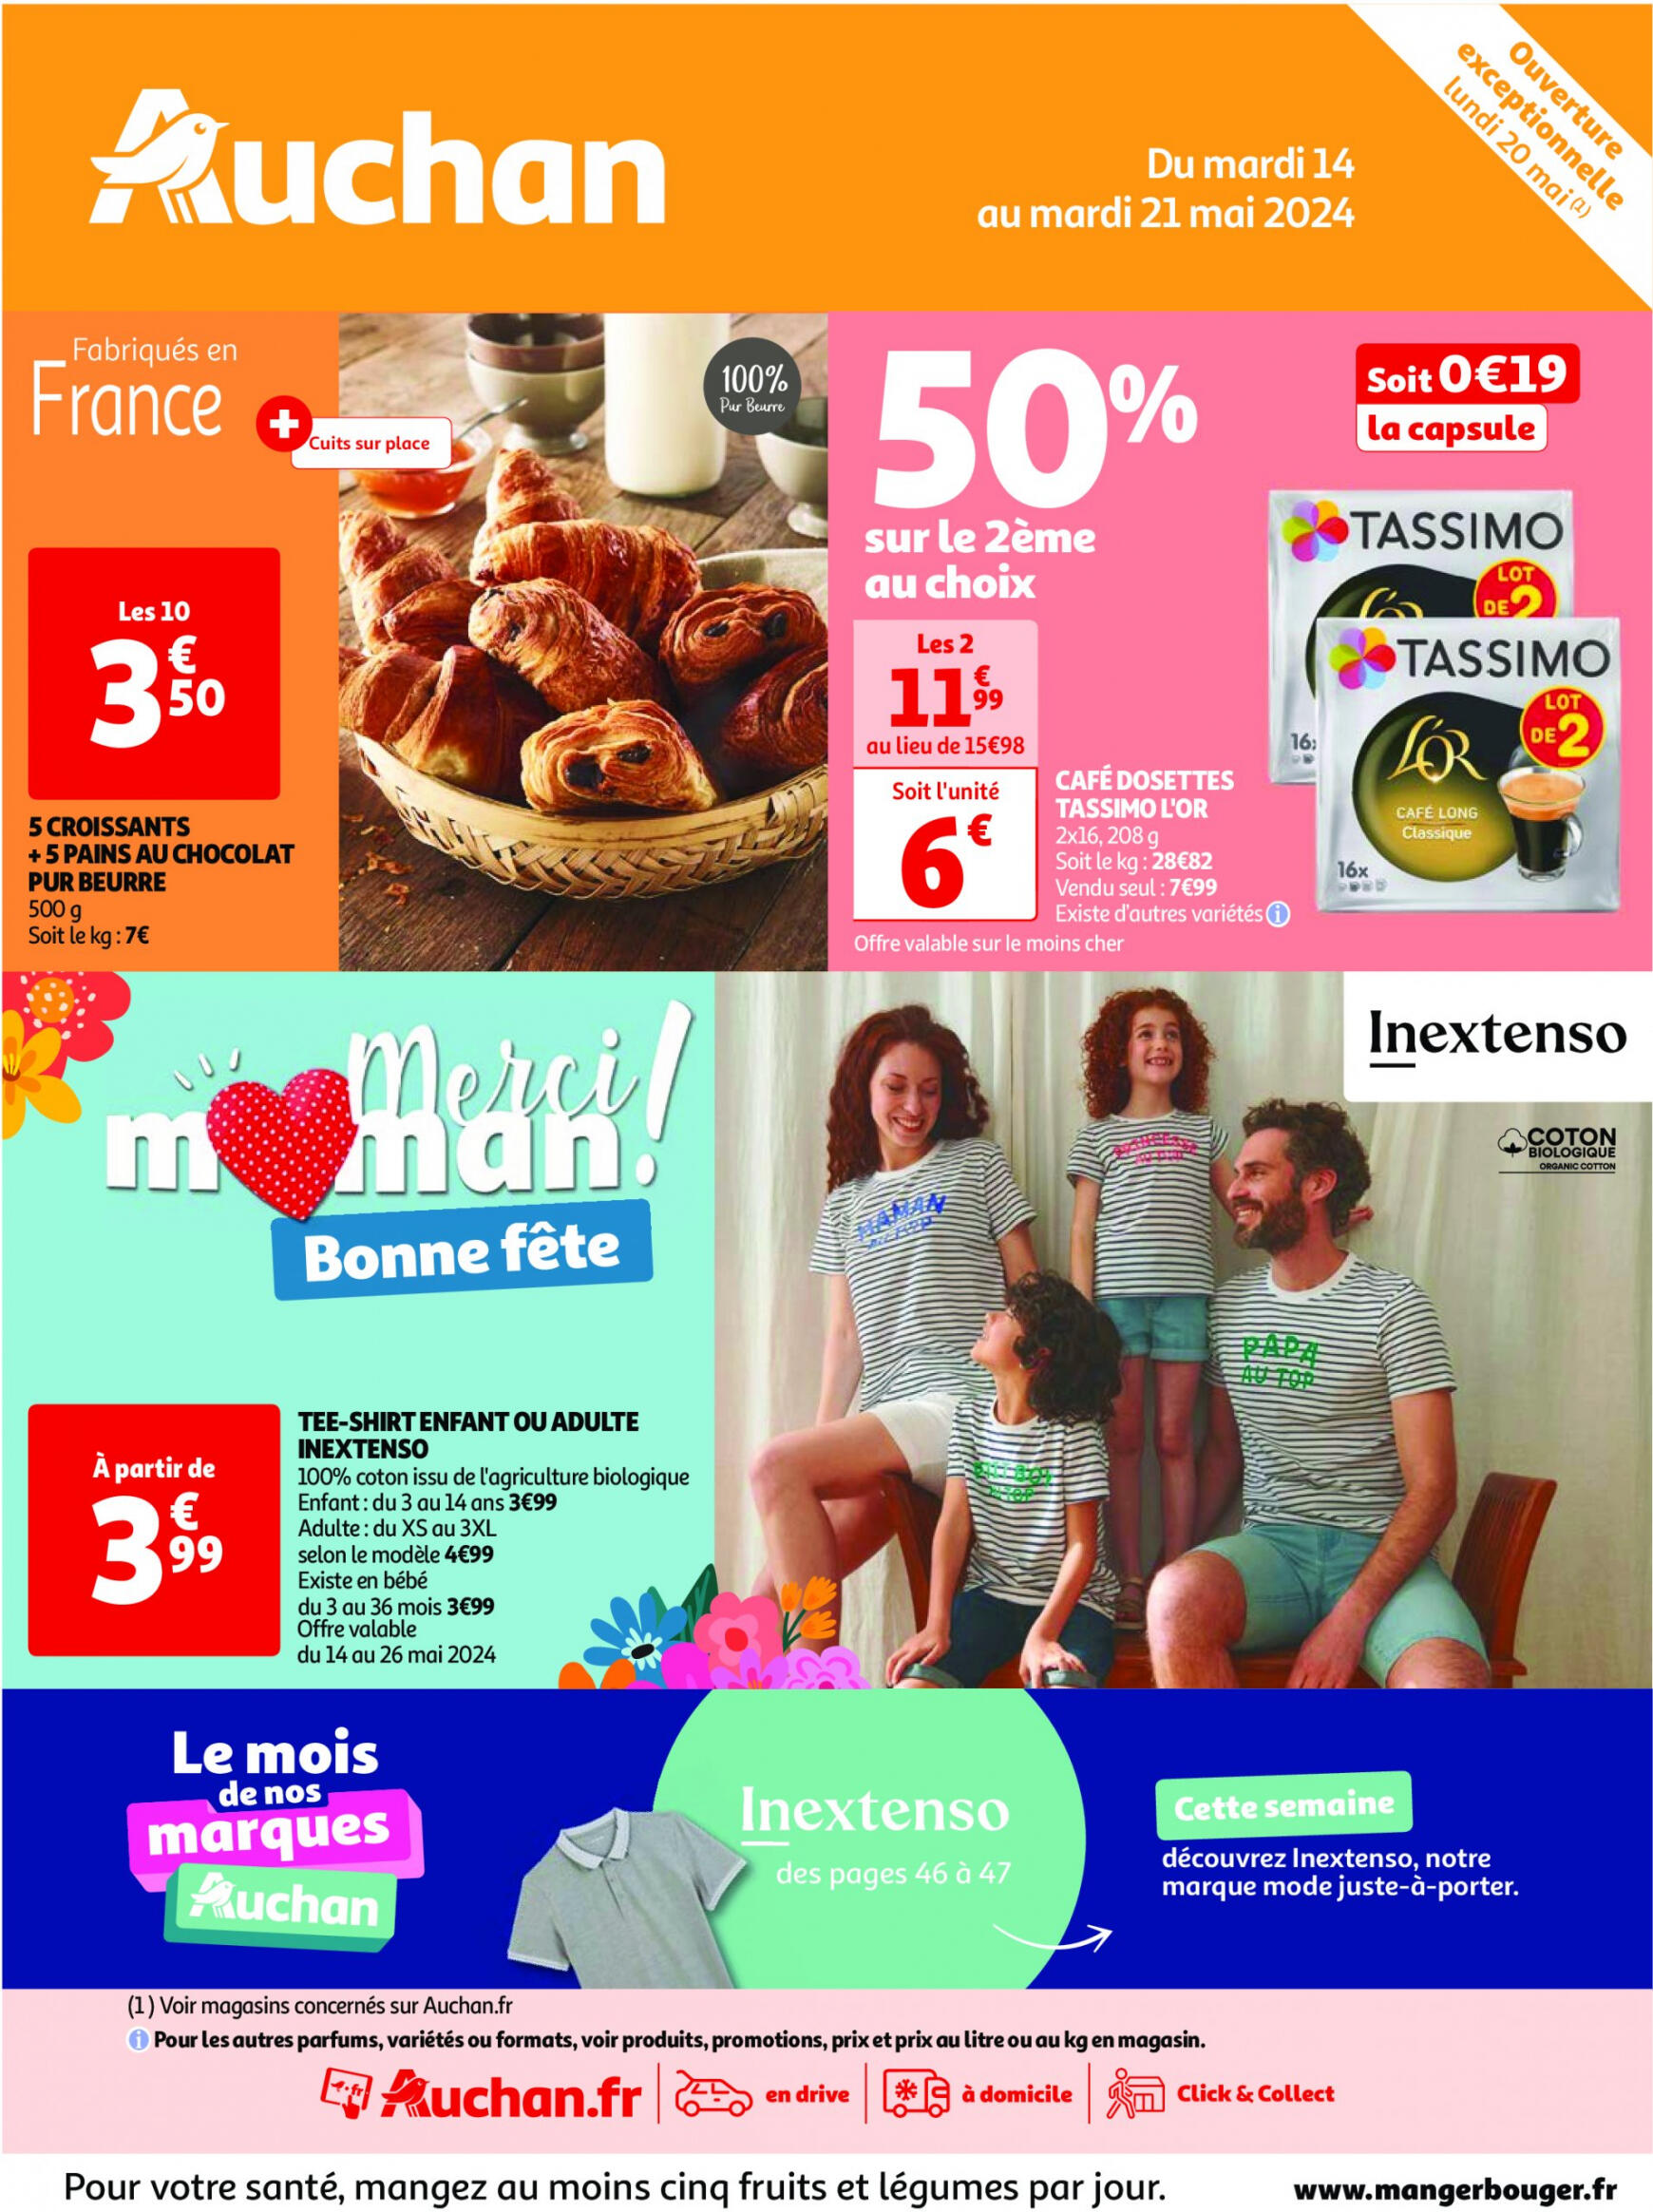 auchan - Prospectus Auchan actuel 14.05. - 21.05. - page: 1